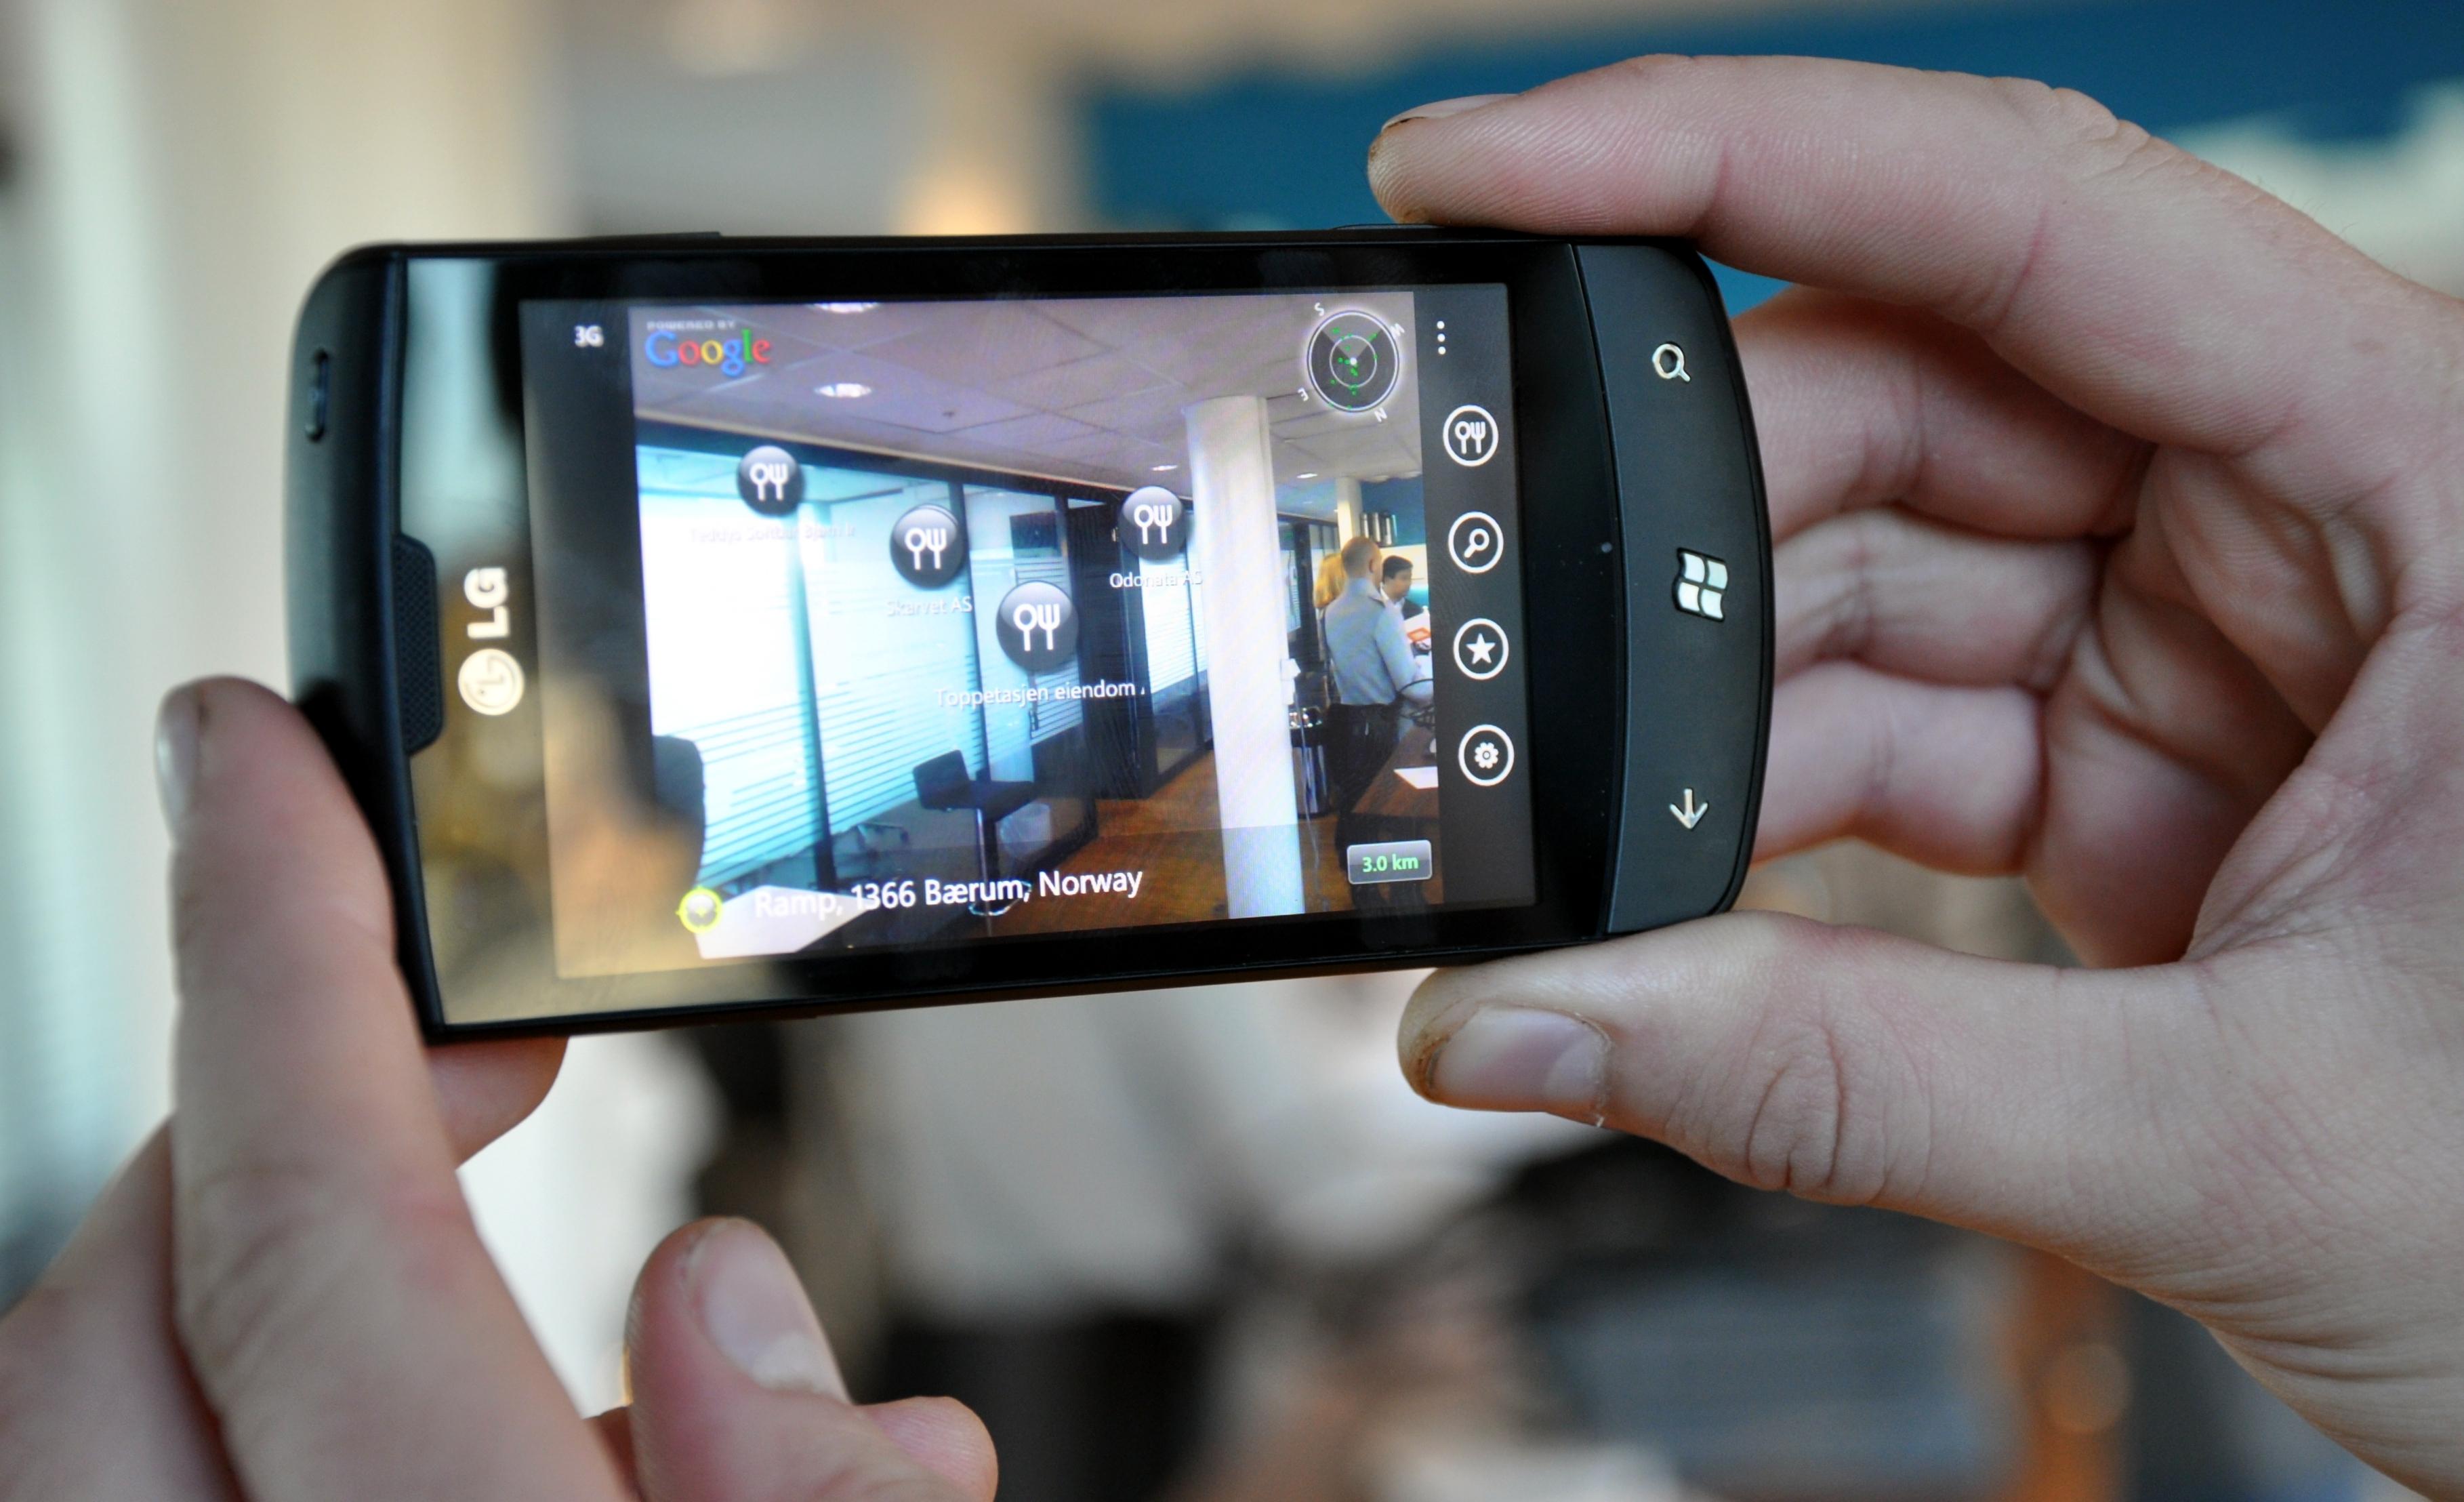 LG ble med på Windows Phone-laget på nytt igjen tidligere i år. Her er LG Optimus 7, en av de første Windows Phone-mobilene på markedet.Foto: Mobilen.no